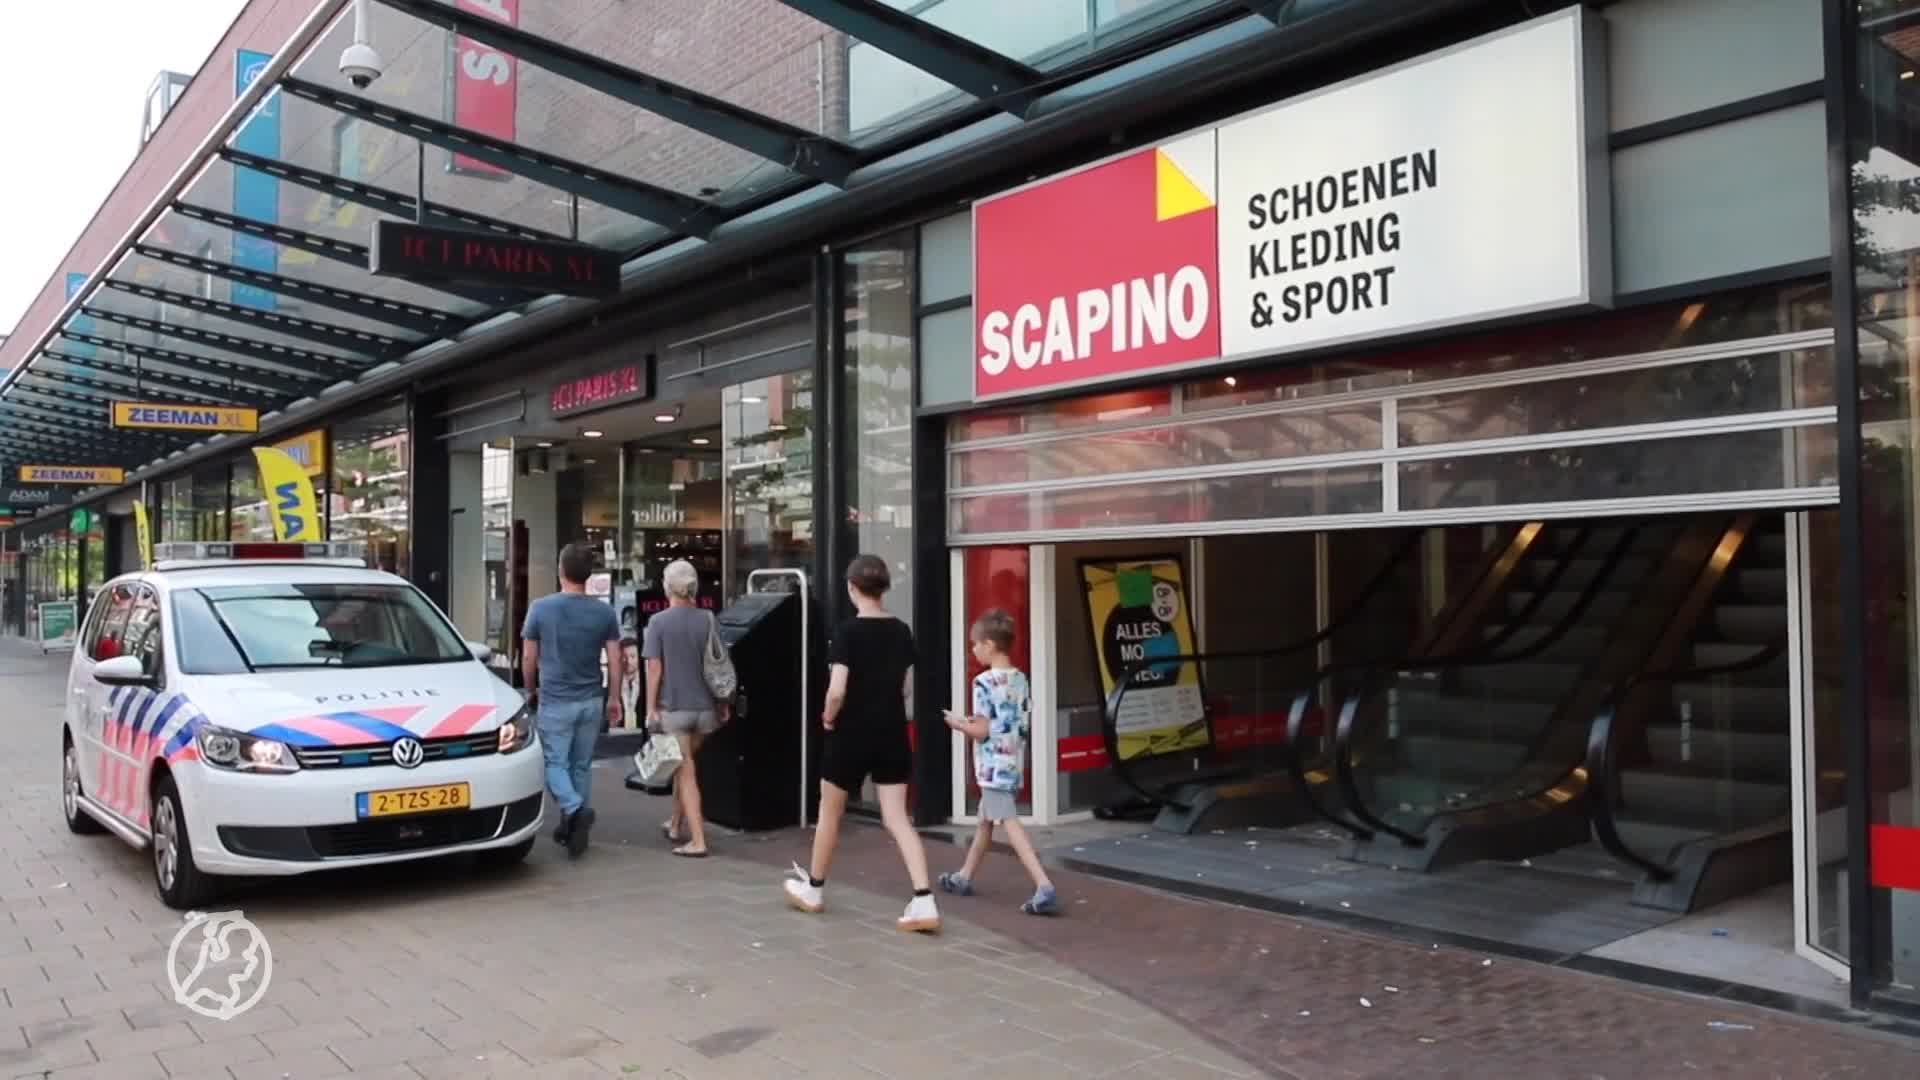 Koopjesjagers op de vuist bij opheffingsuitverkoop Scapino, politie ontruimt winkel